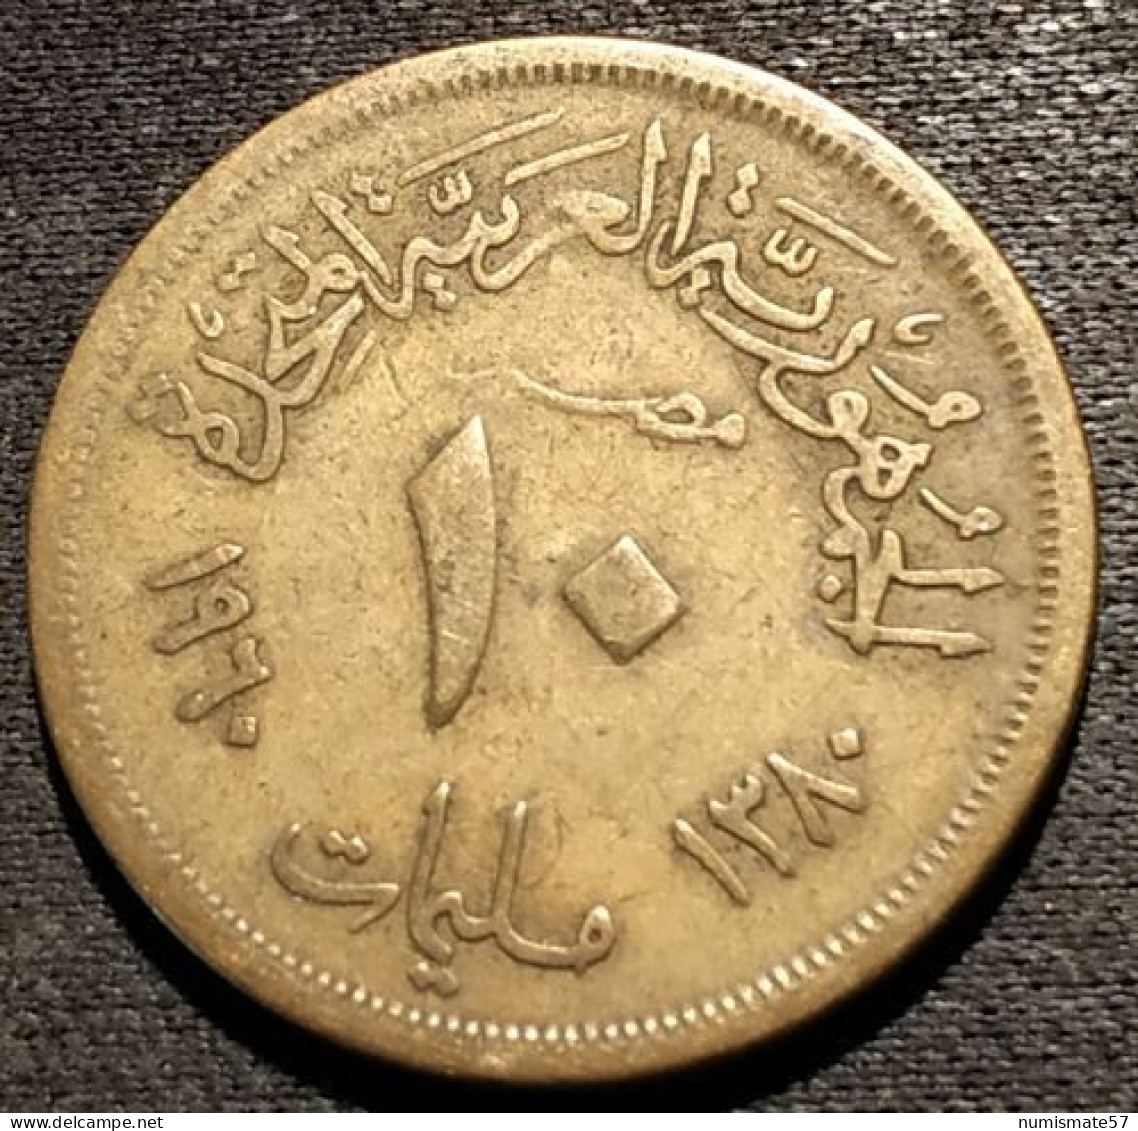 EGYPTE - EGYPT - 10 MILLIEMES 1960 ( 1380 ) - KM 395 - Egypte